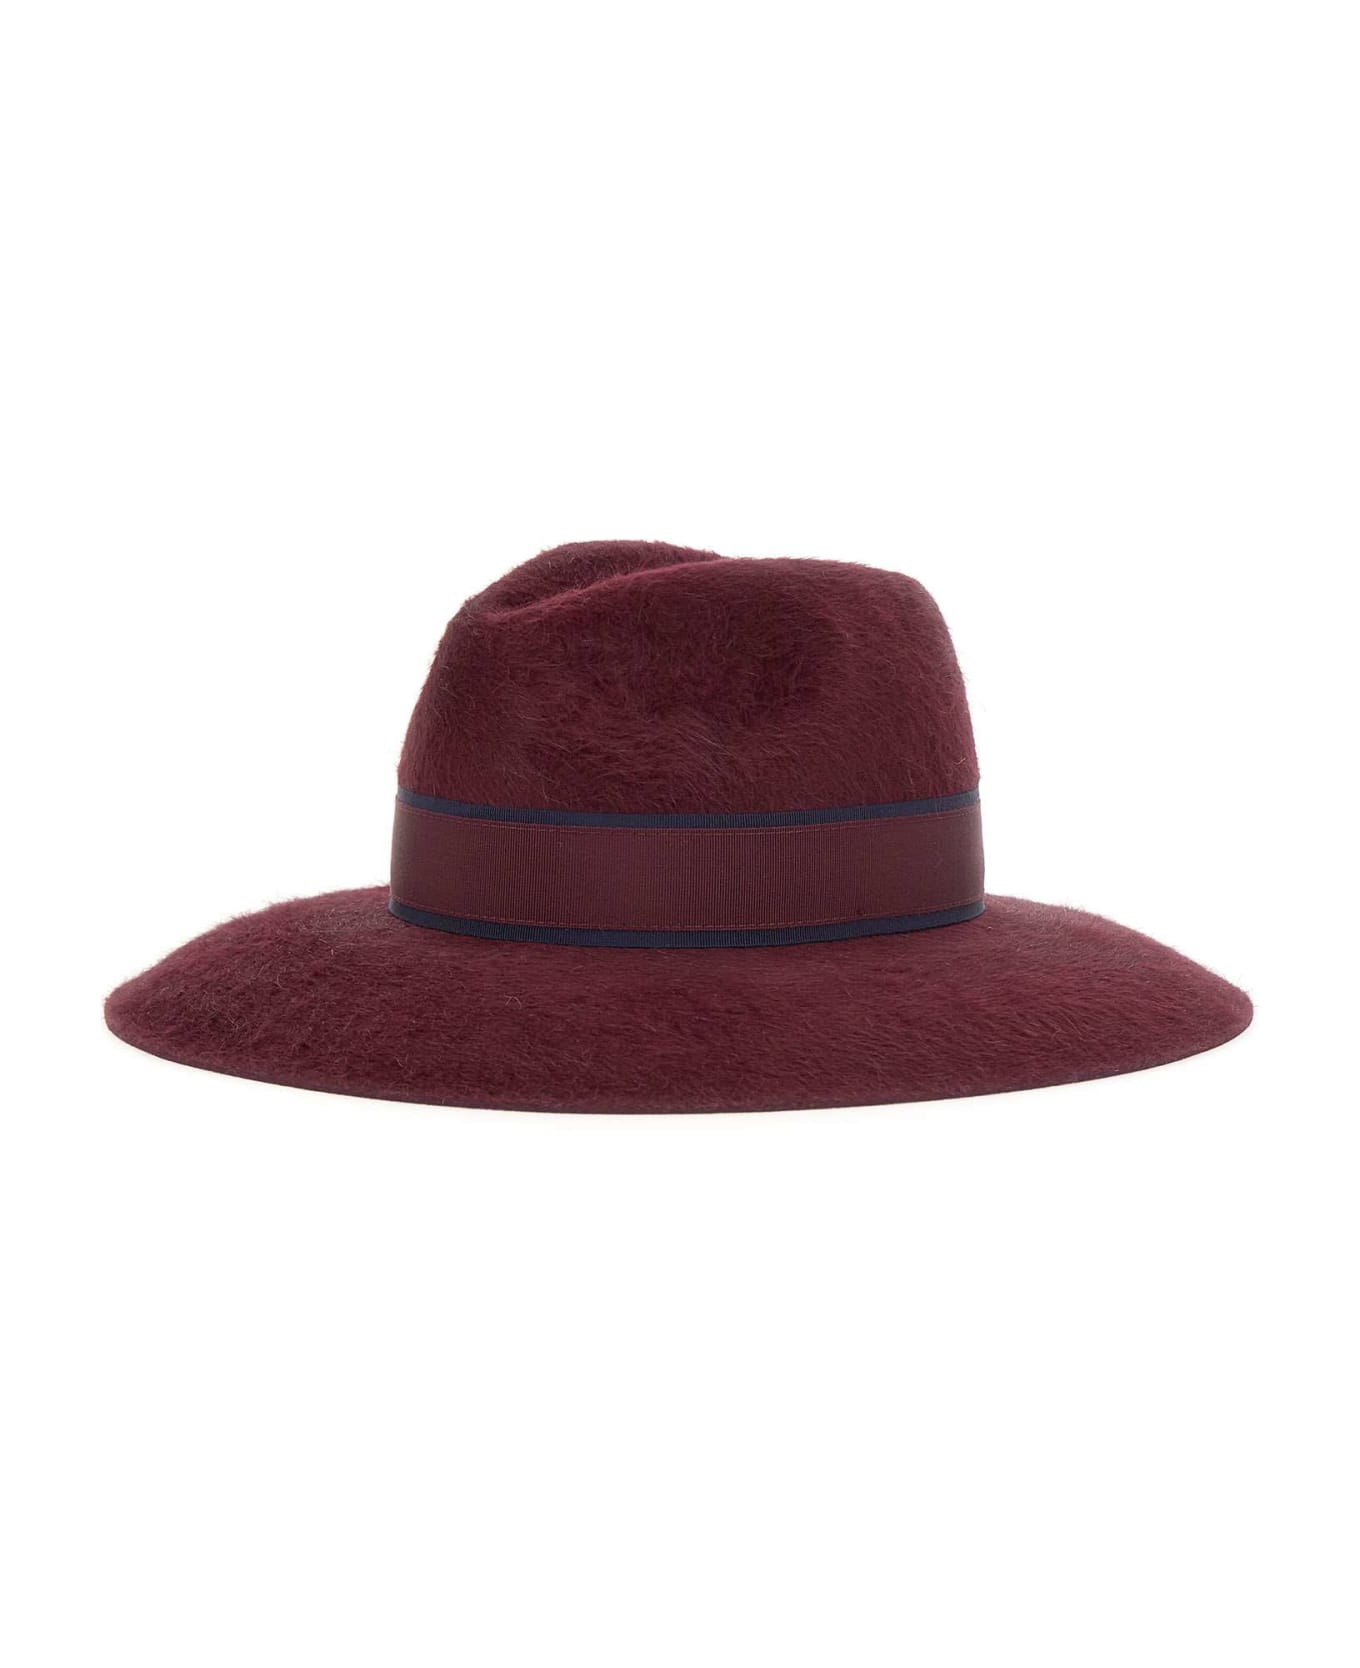 Borsalino Felt Hat - BORDEAUX 帽子